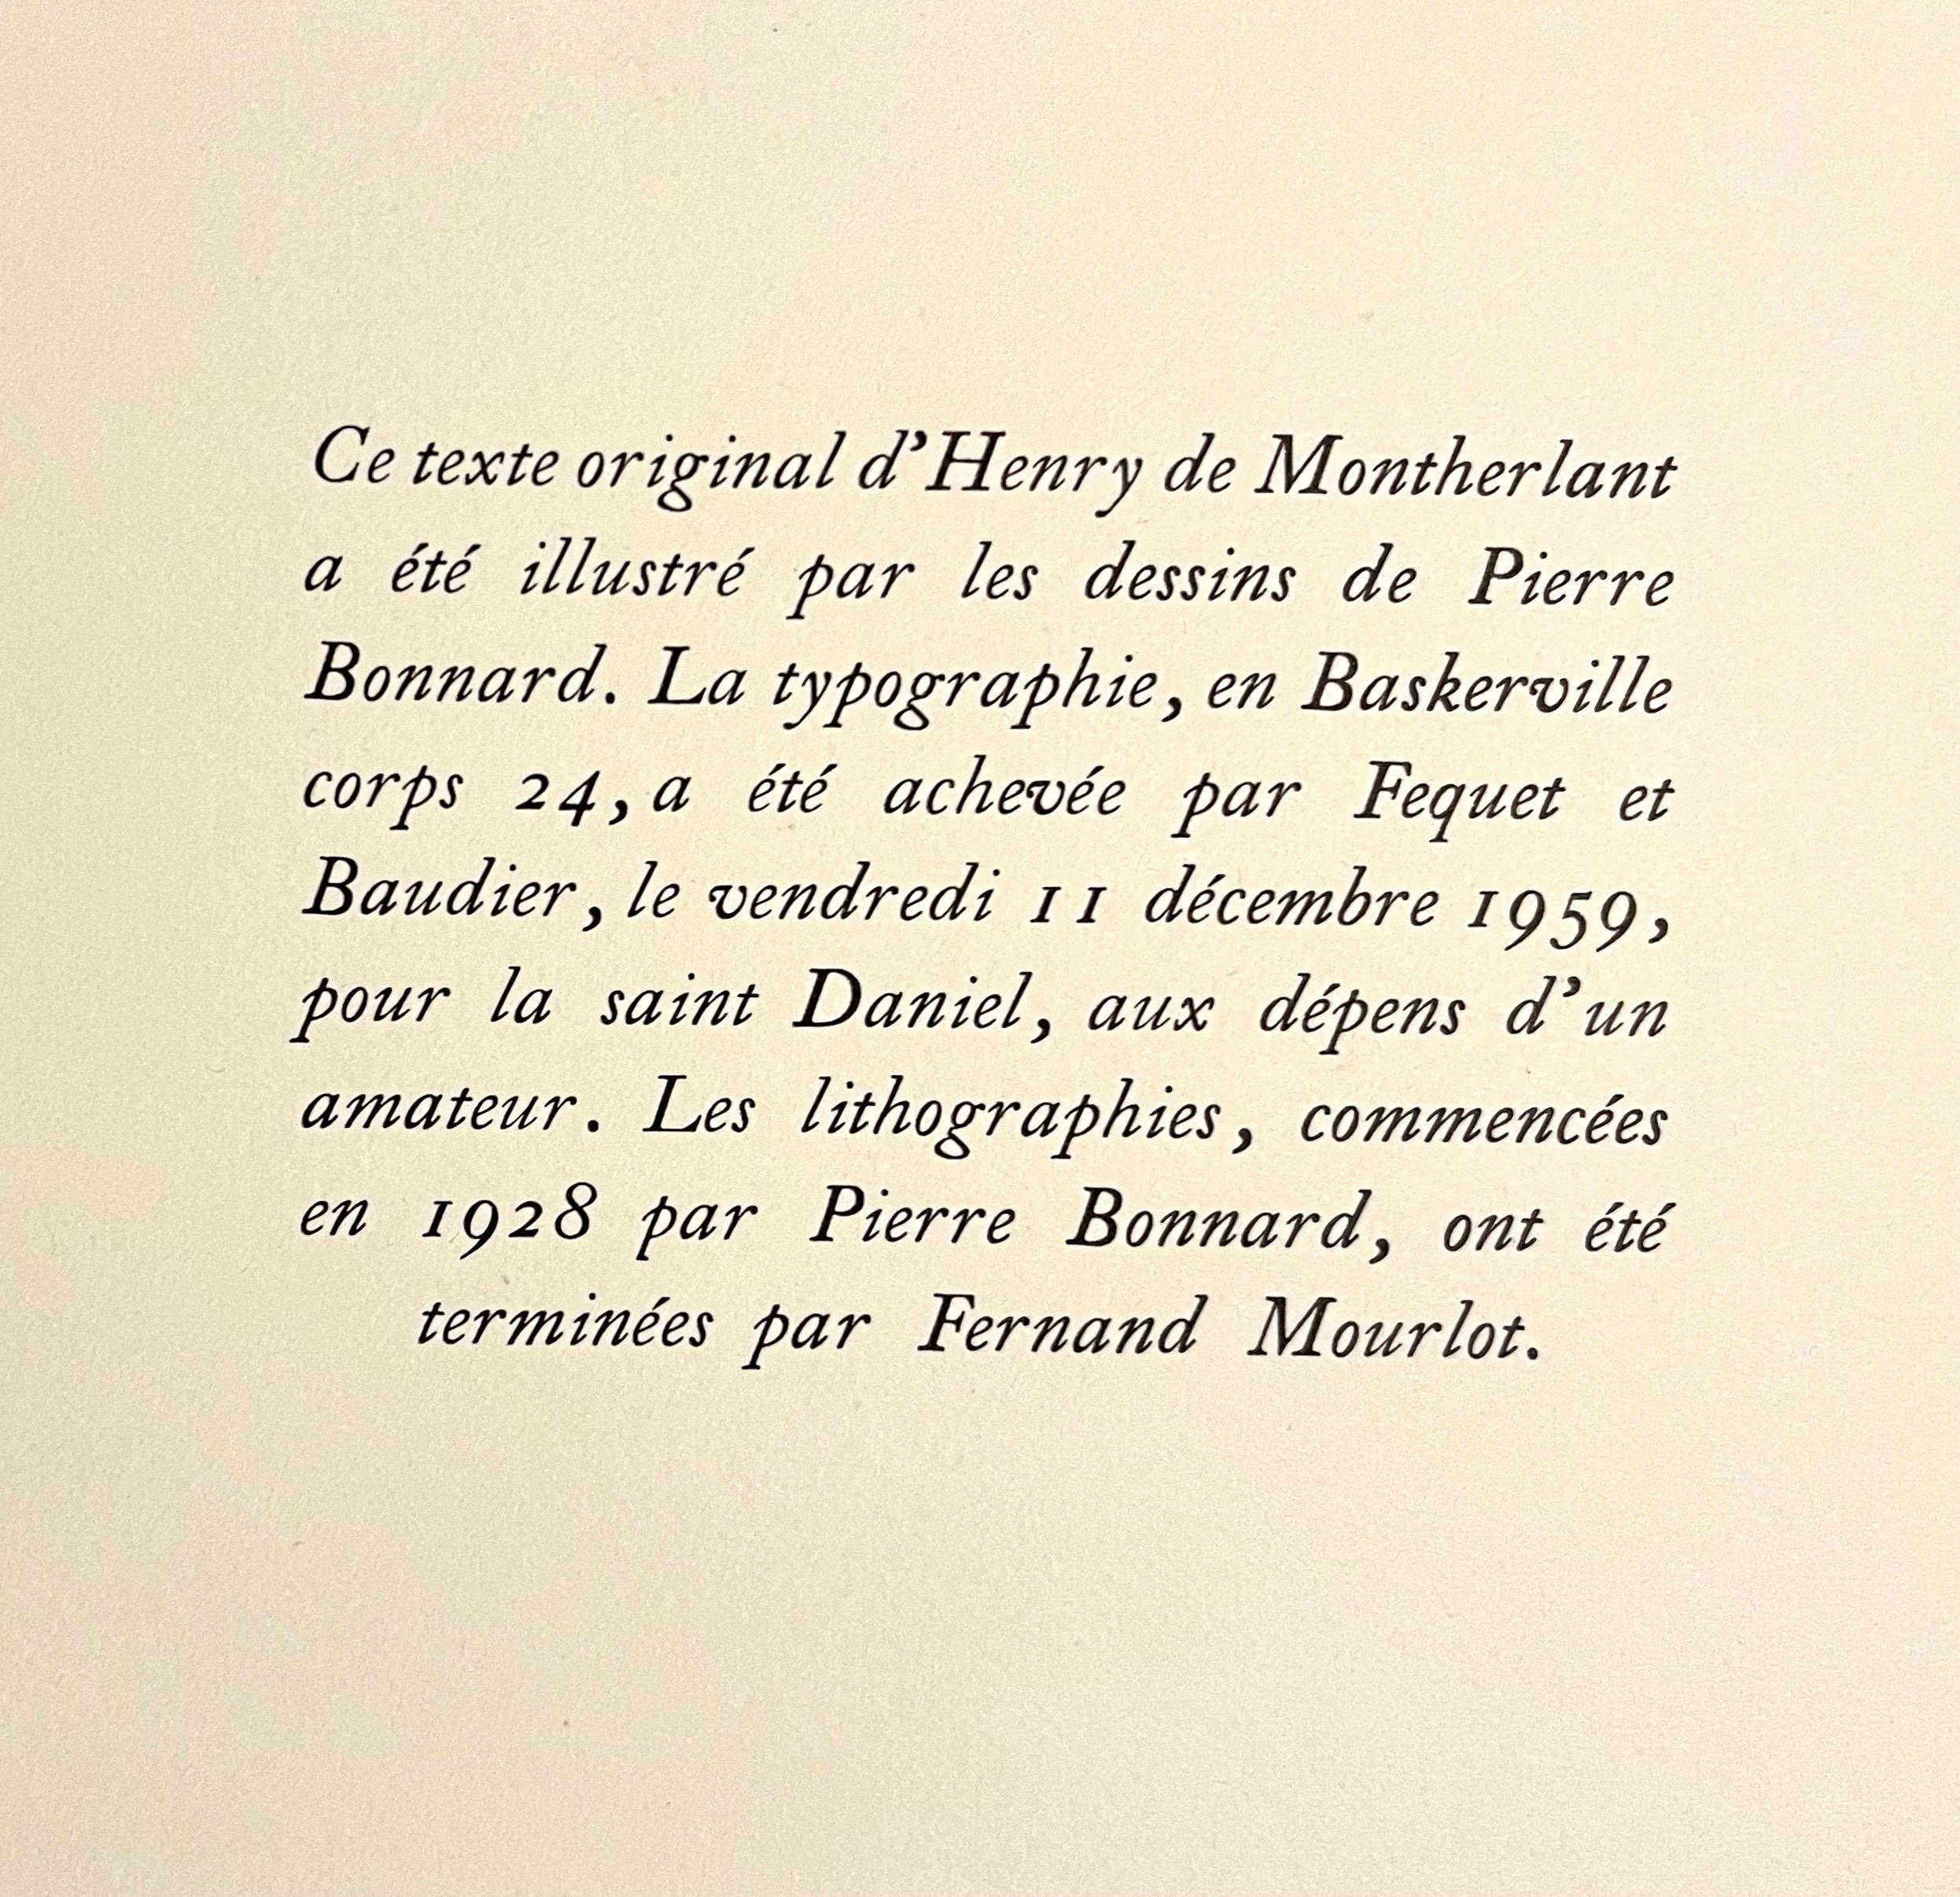 
Cela vient d'un  portefeuille à tirage limité de lithographies originales imprimées par Fernand Mourlot à Paris en 1958 à partir d'un travail réalisé en collaboration avec Bonnard qui a débuté en 1928. 
Il s'agit de l'édition originale rare, n° VII